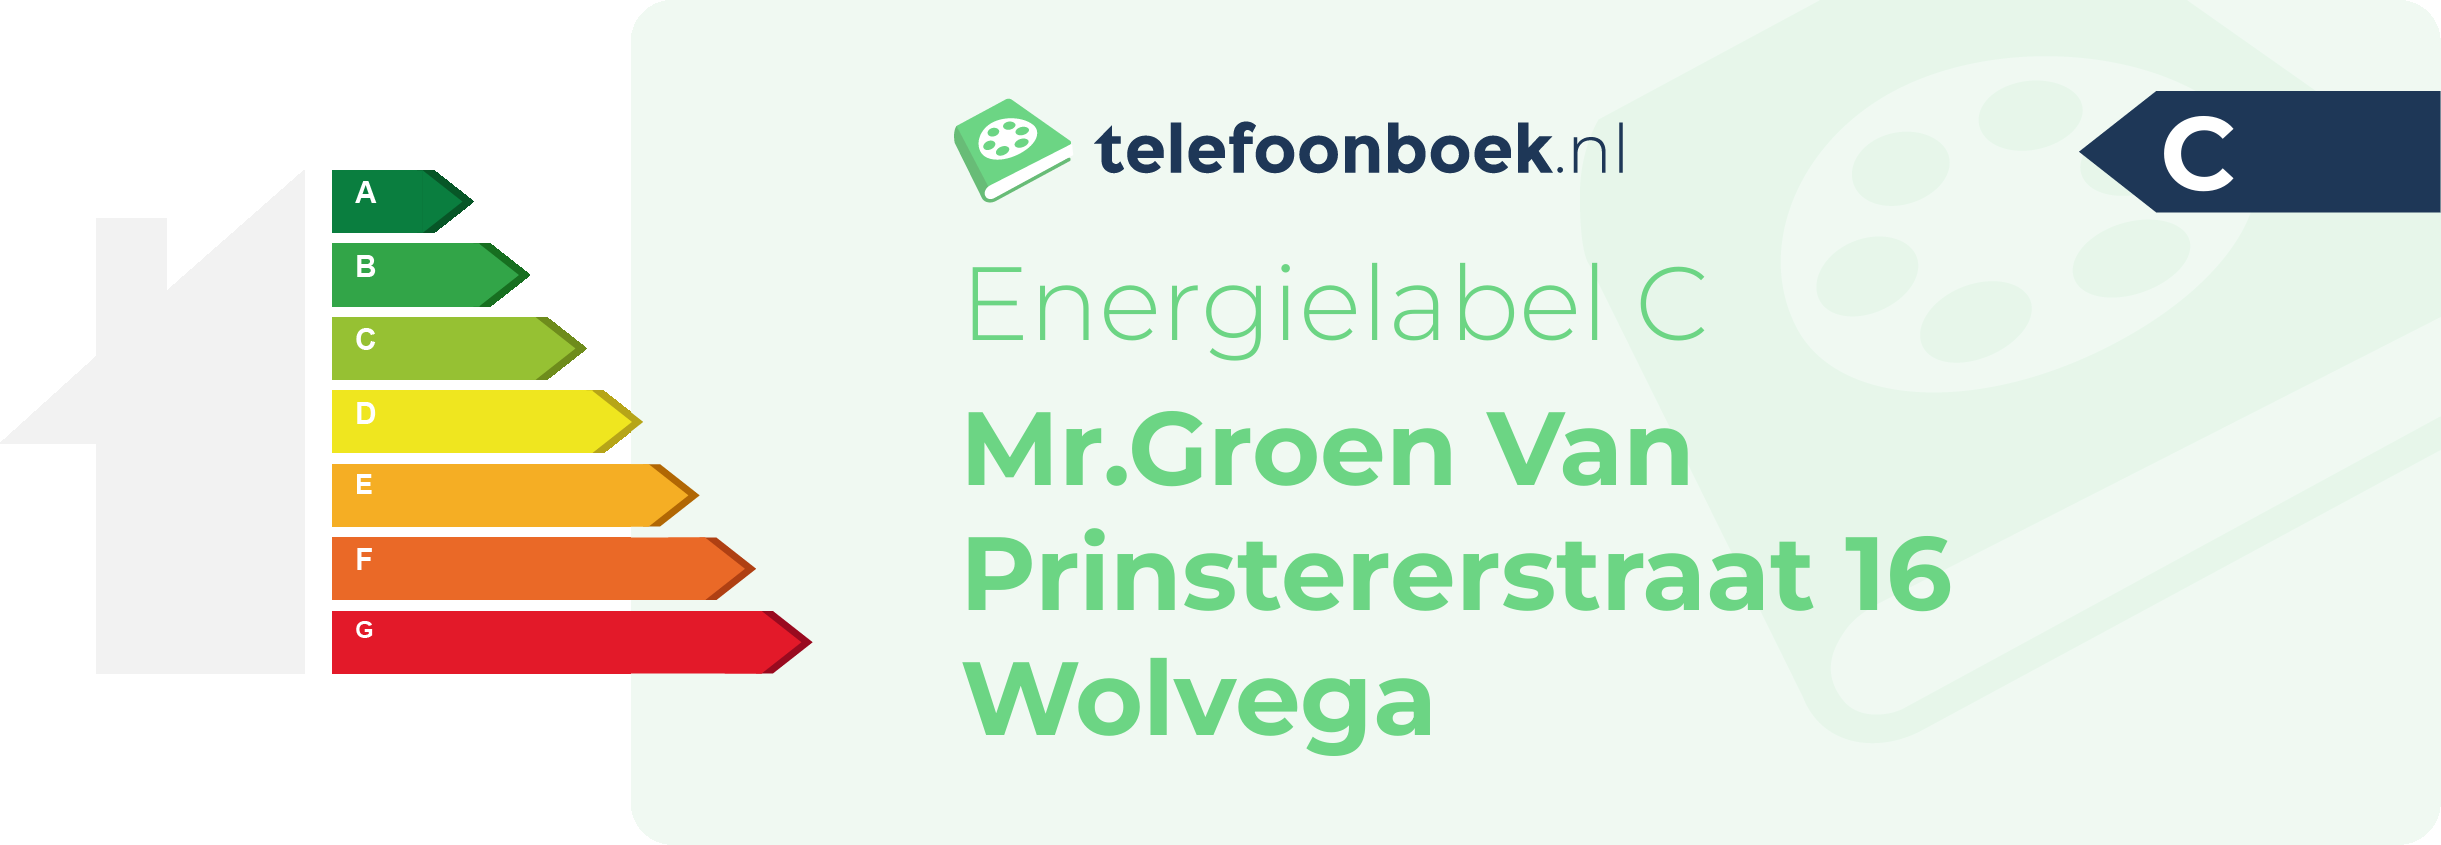 Energielabel Mr.Groen Van Prinstererstraat 16 Wolvega